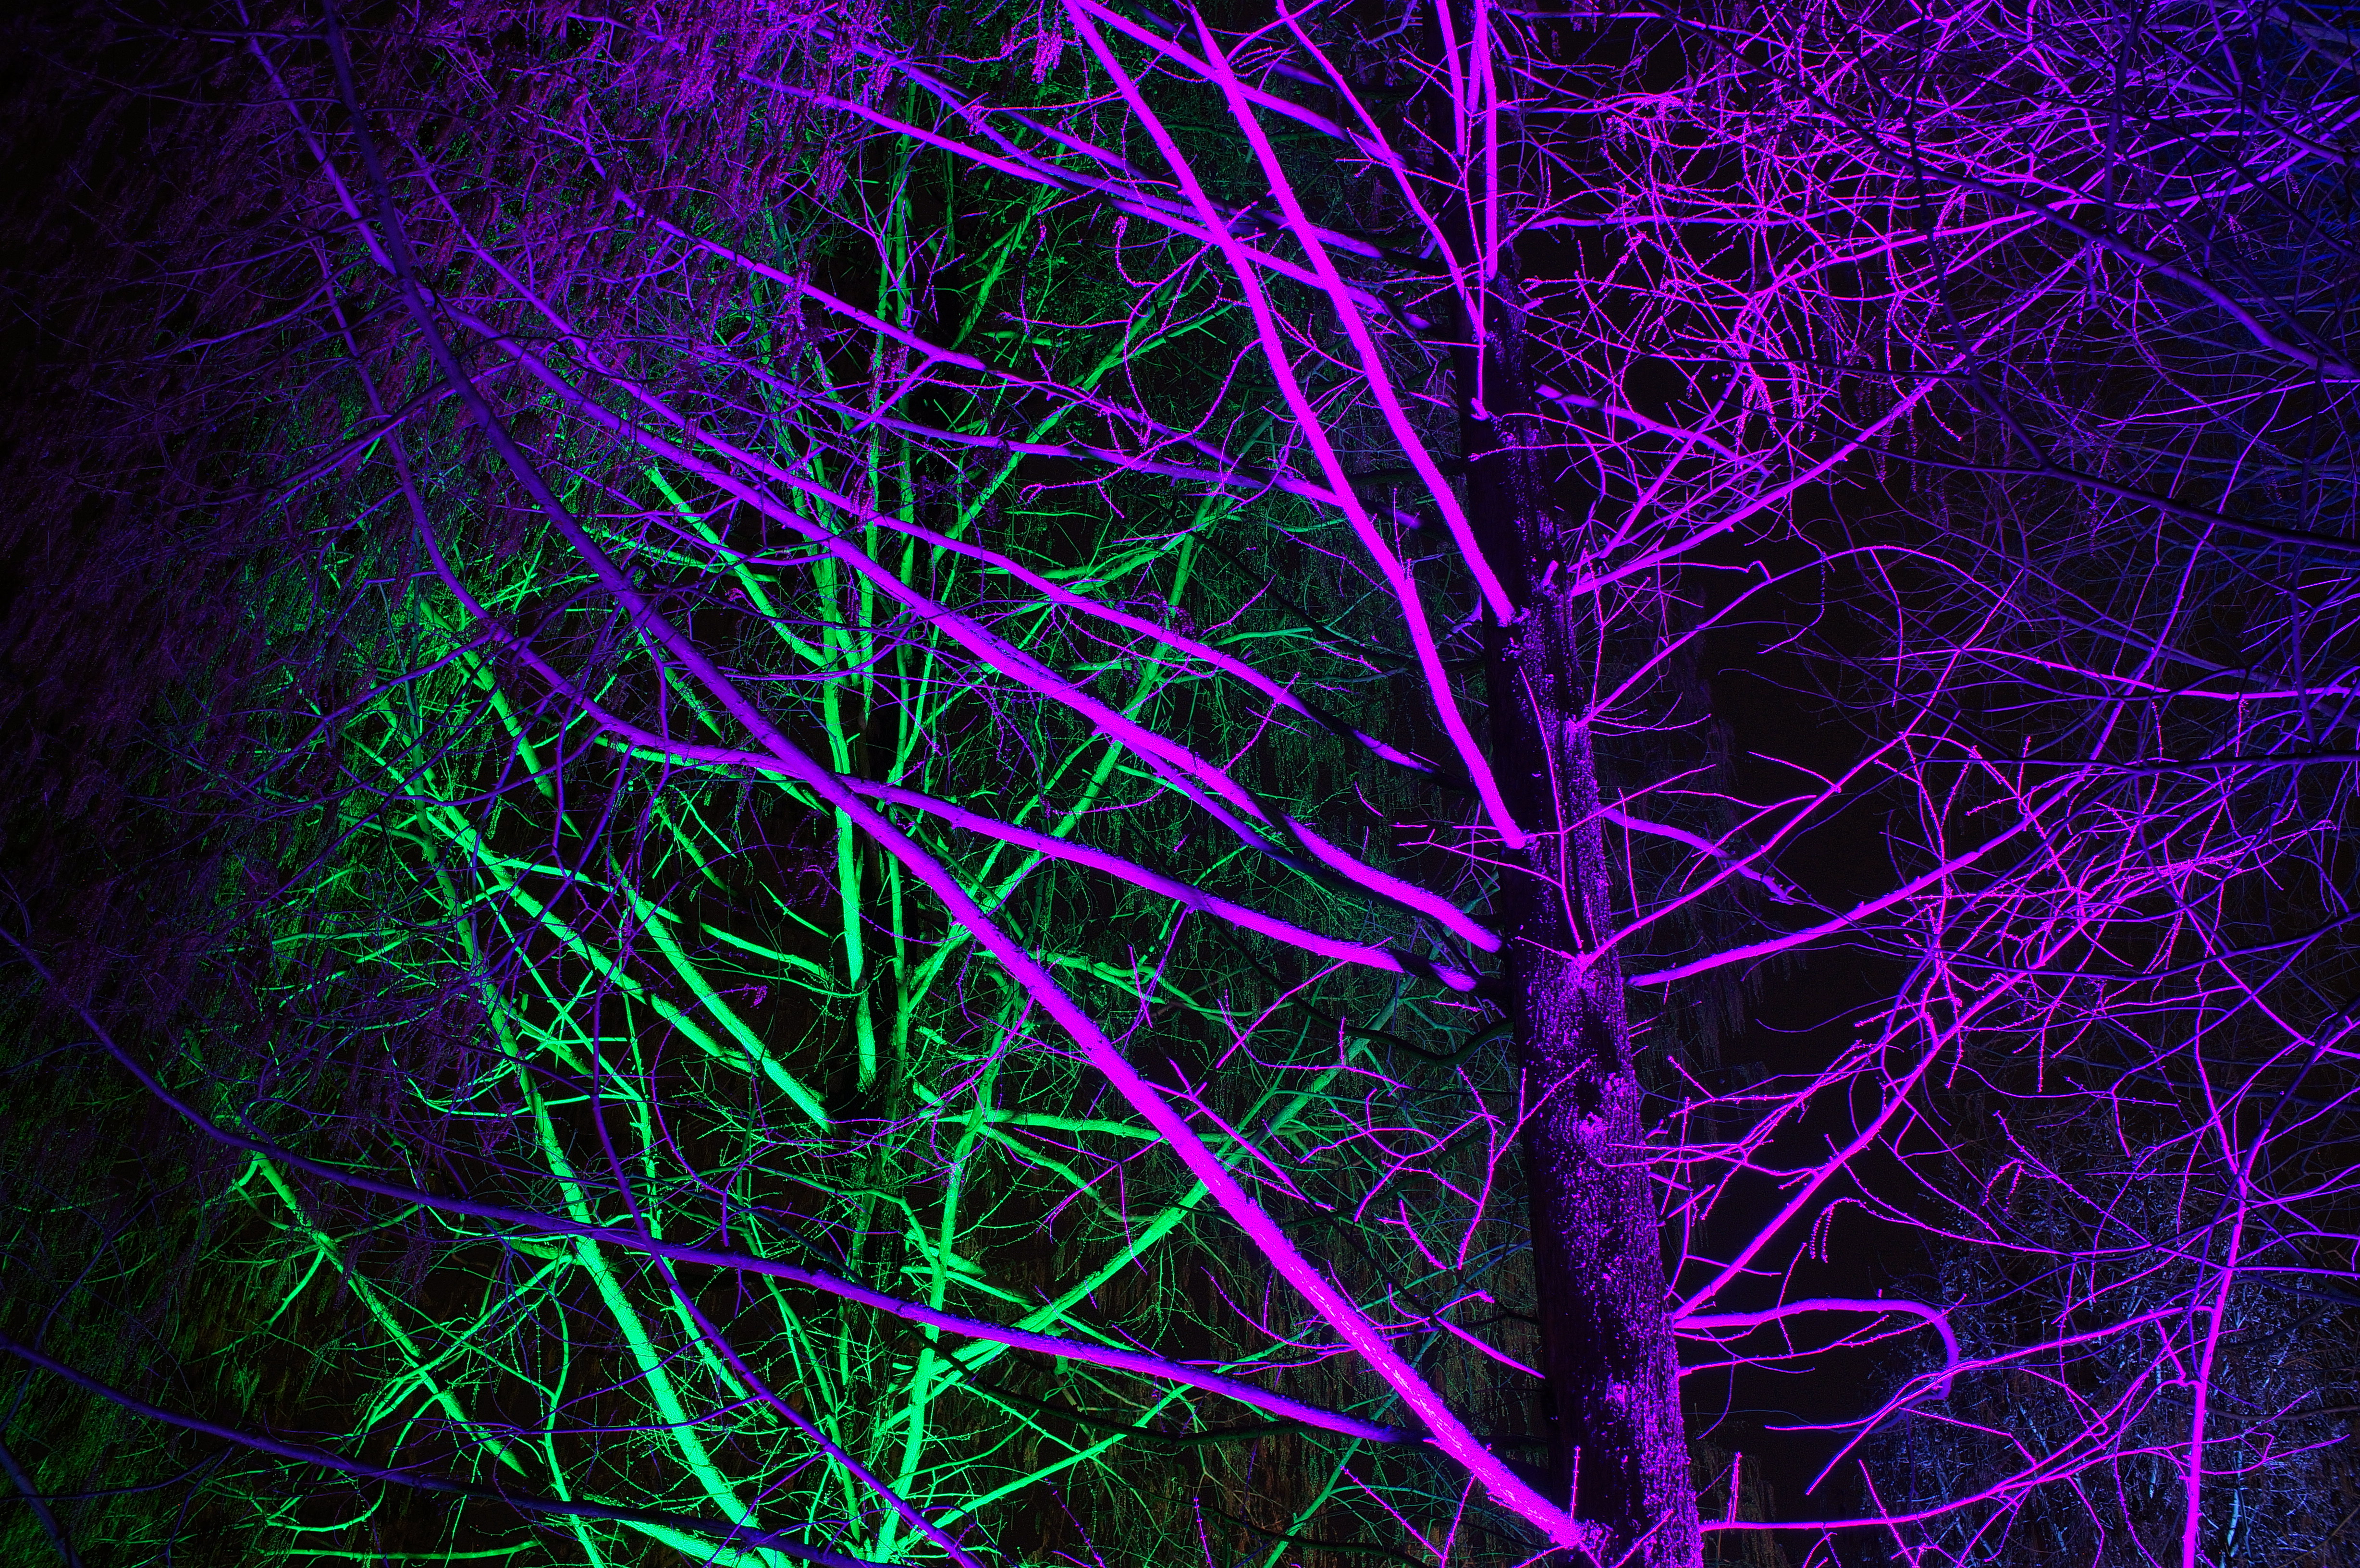 backlight, neon, purple, green, trees, violet, dark, illumination